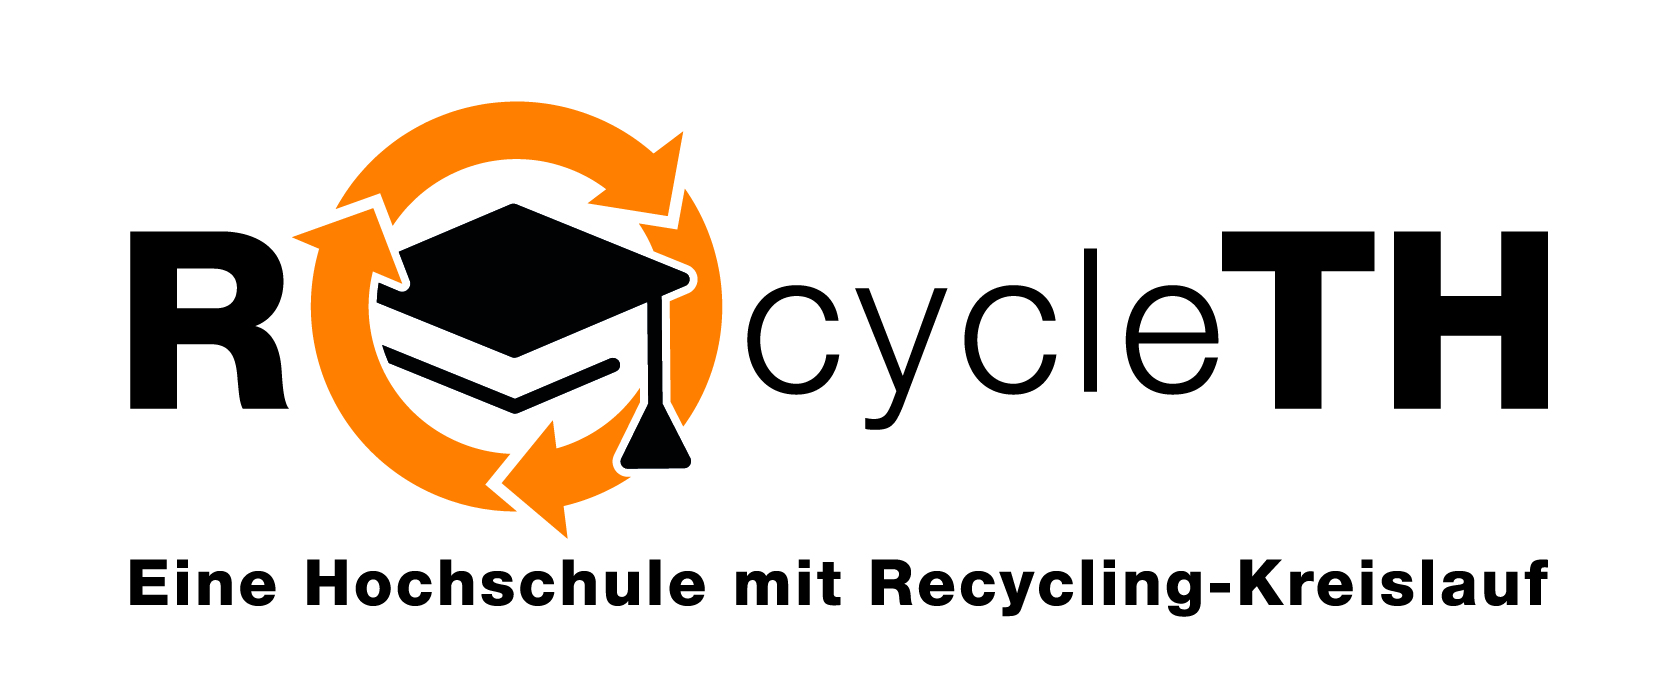 Grafische Darstellung von Text "ROcycleTH - Eine Hochschule mit Recycling-Kreislauf"